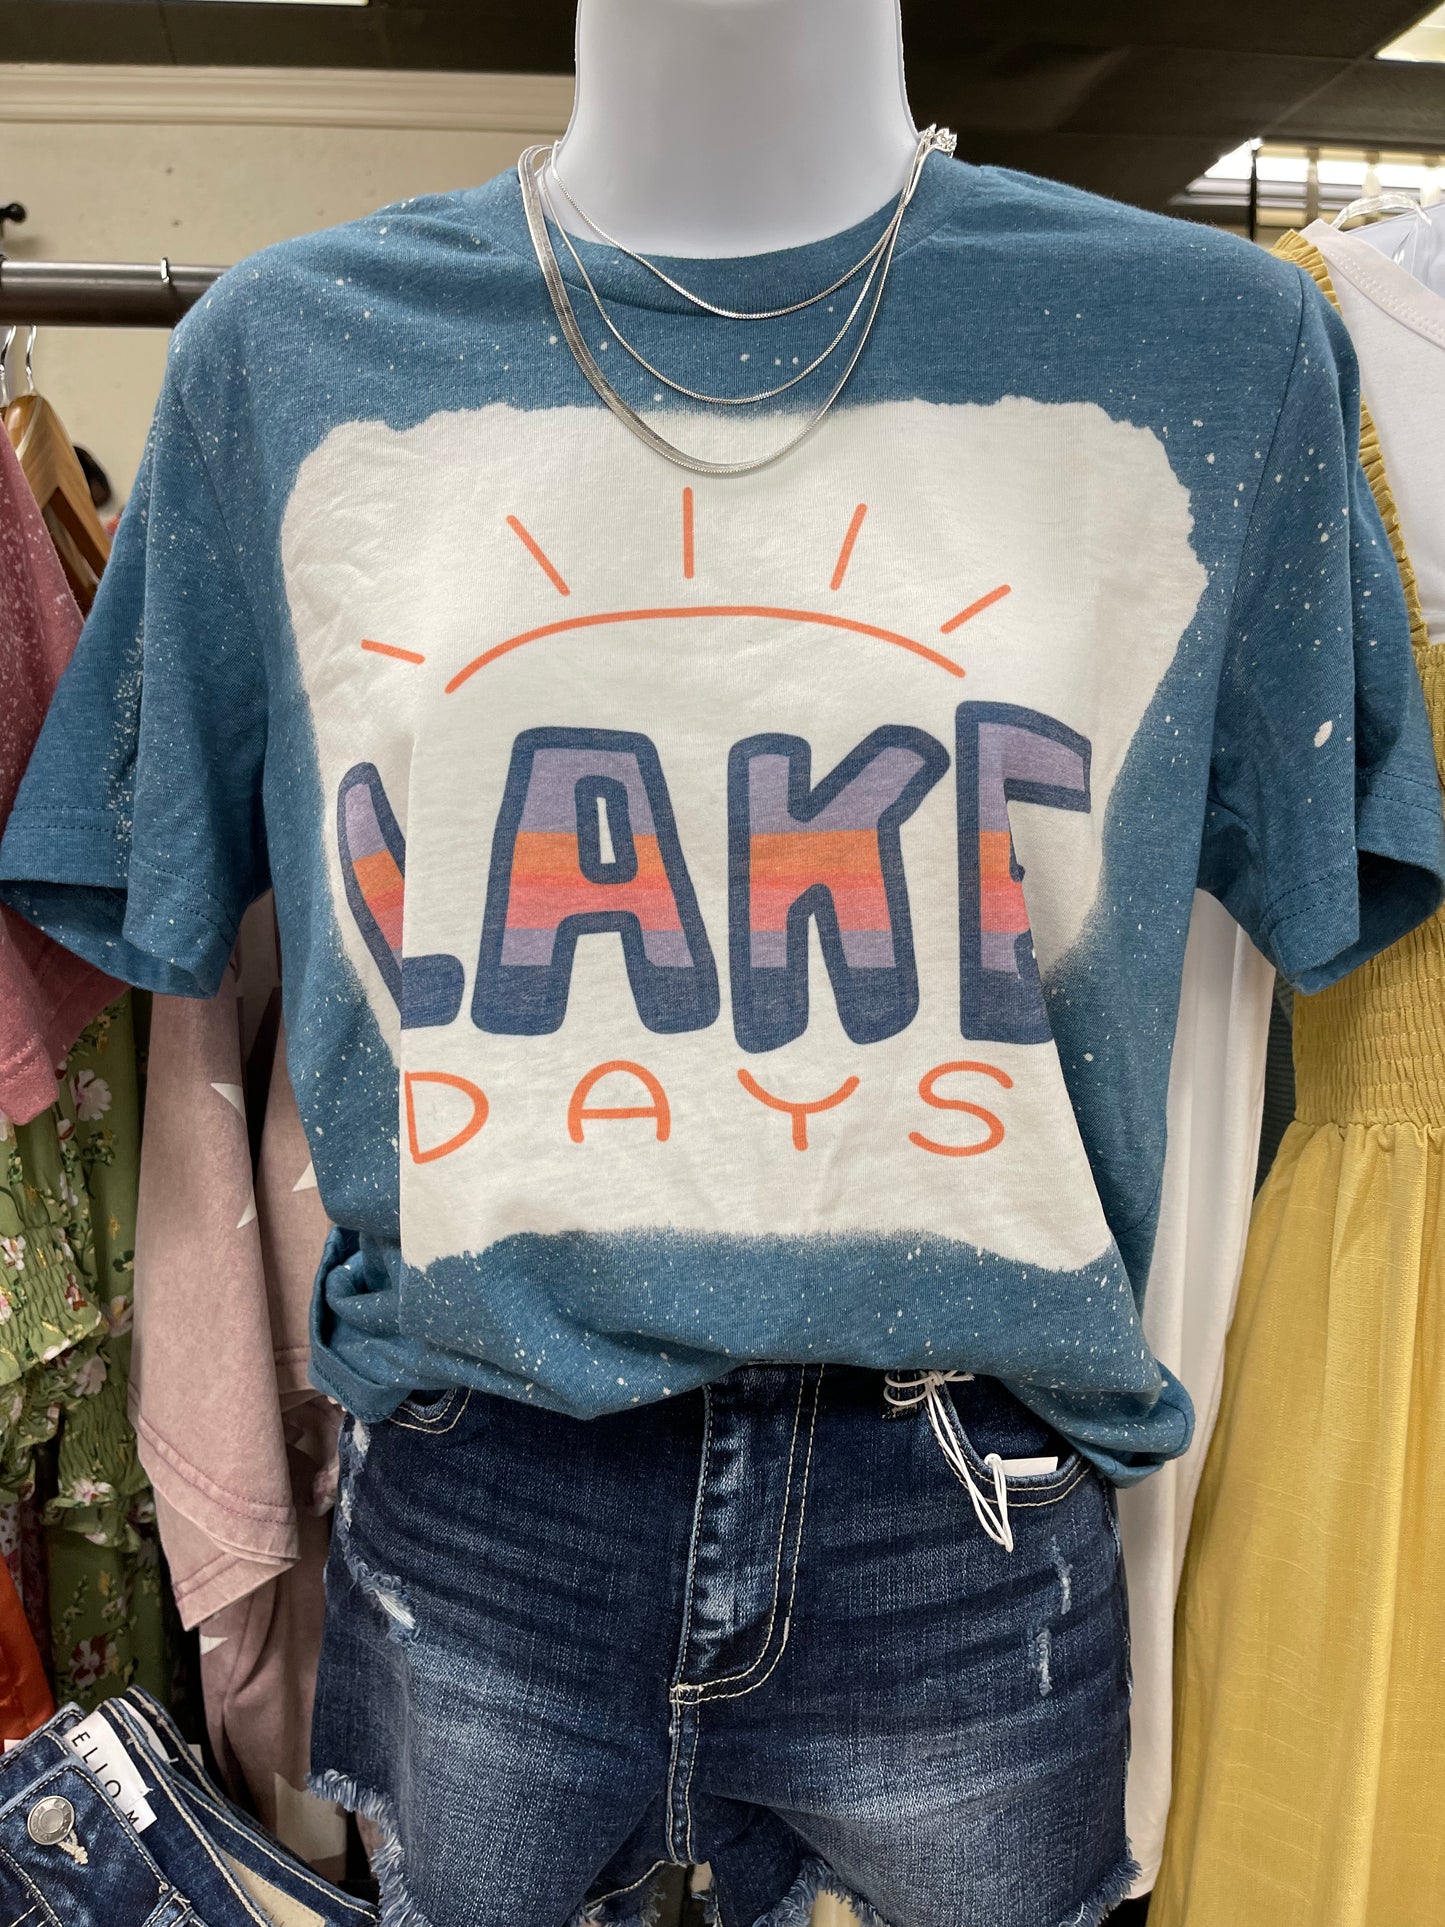 Lake Days Tee